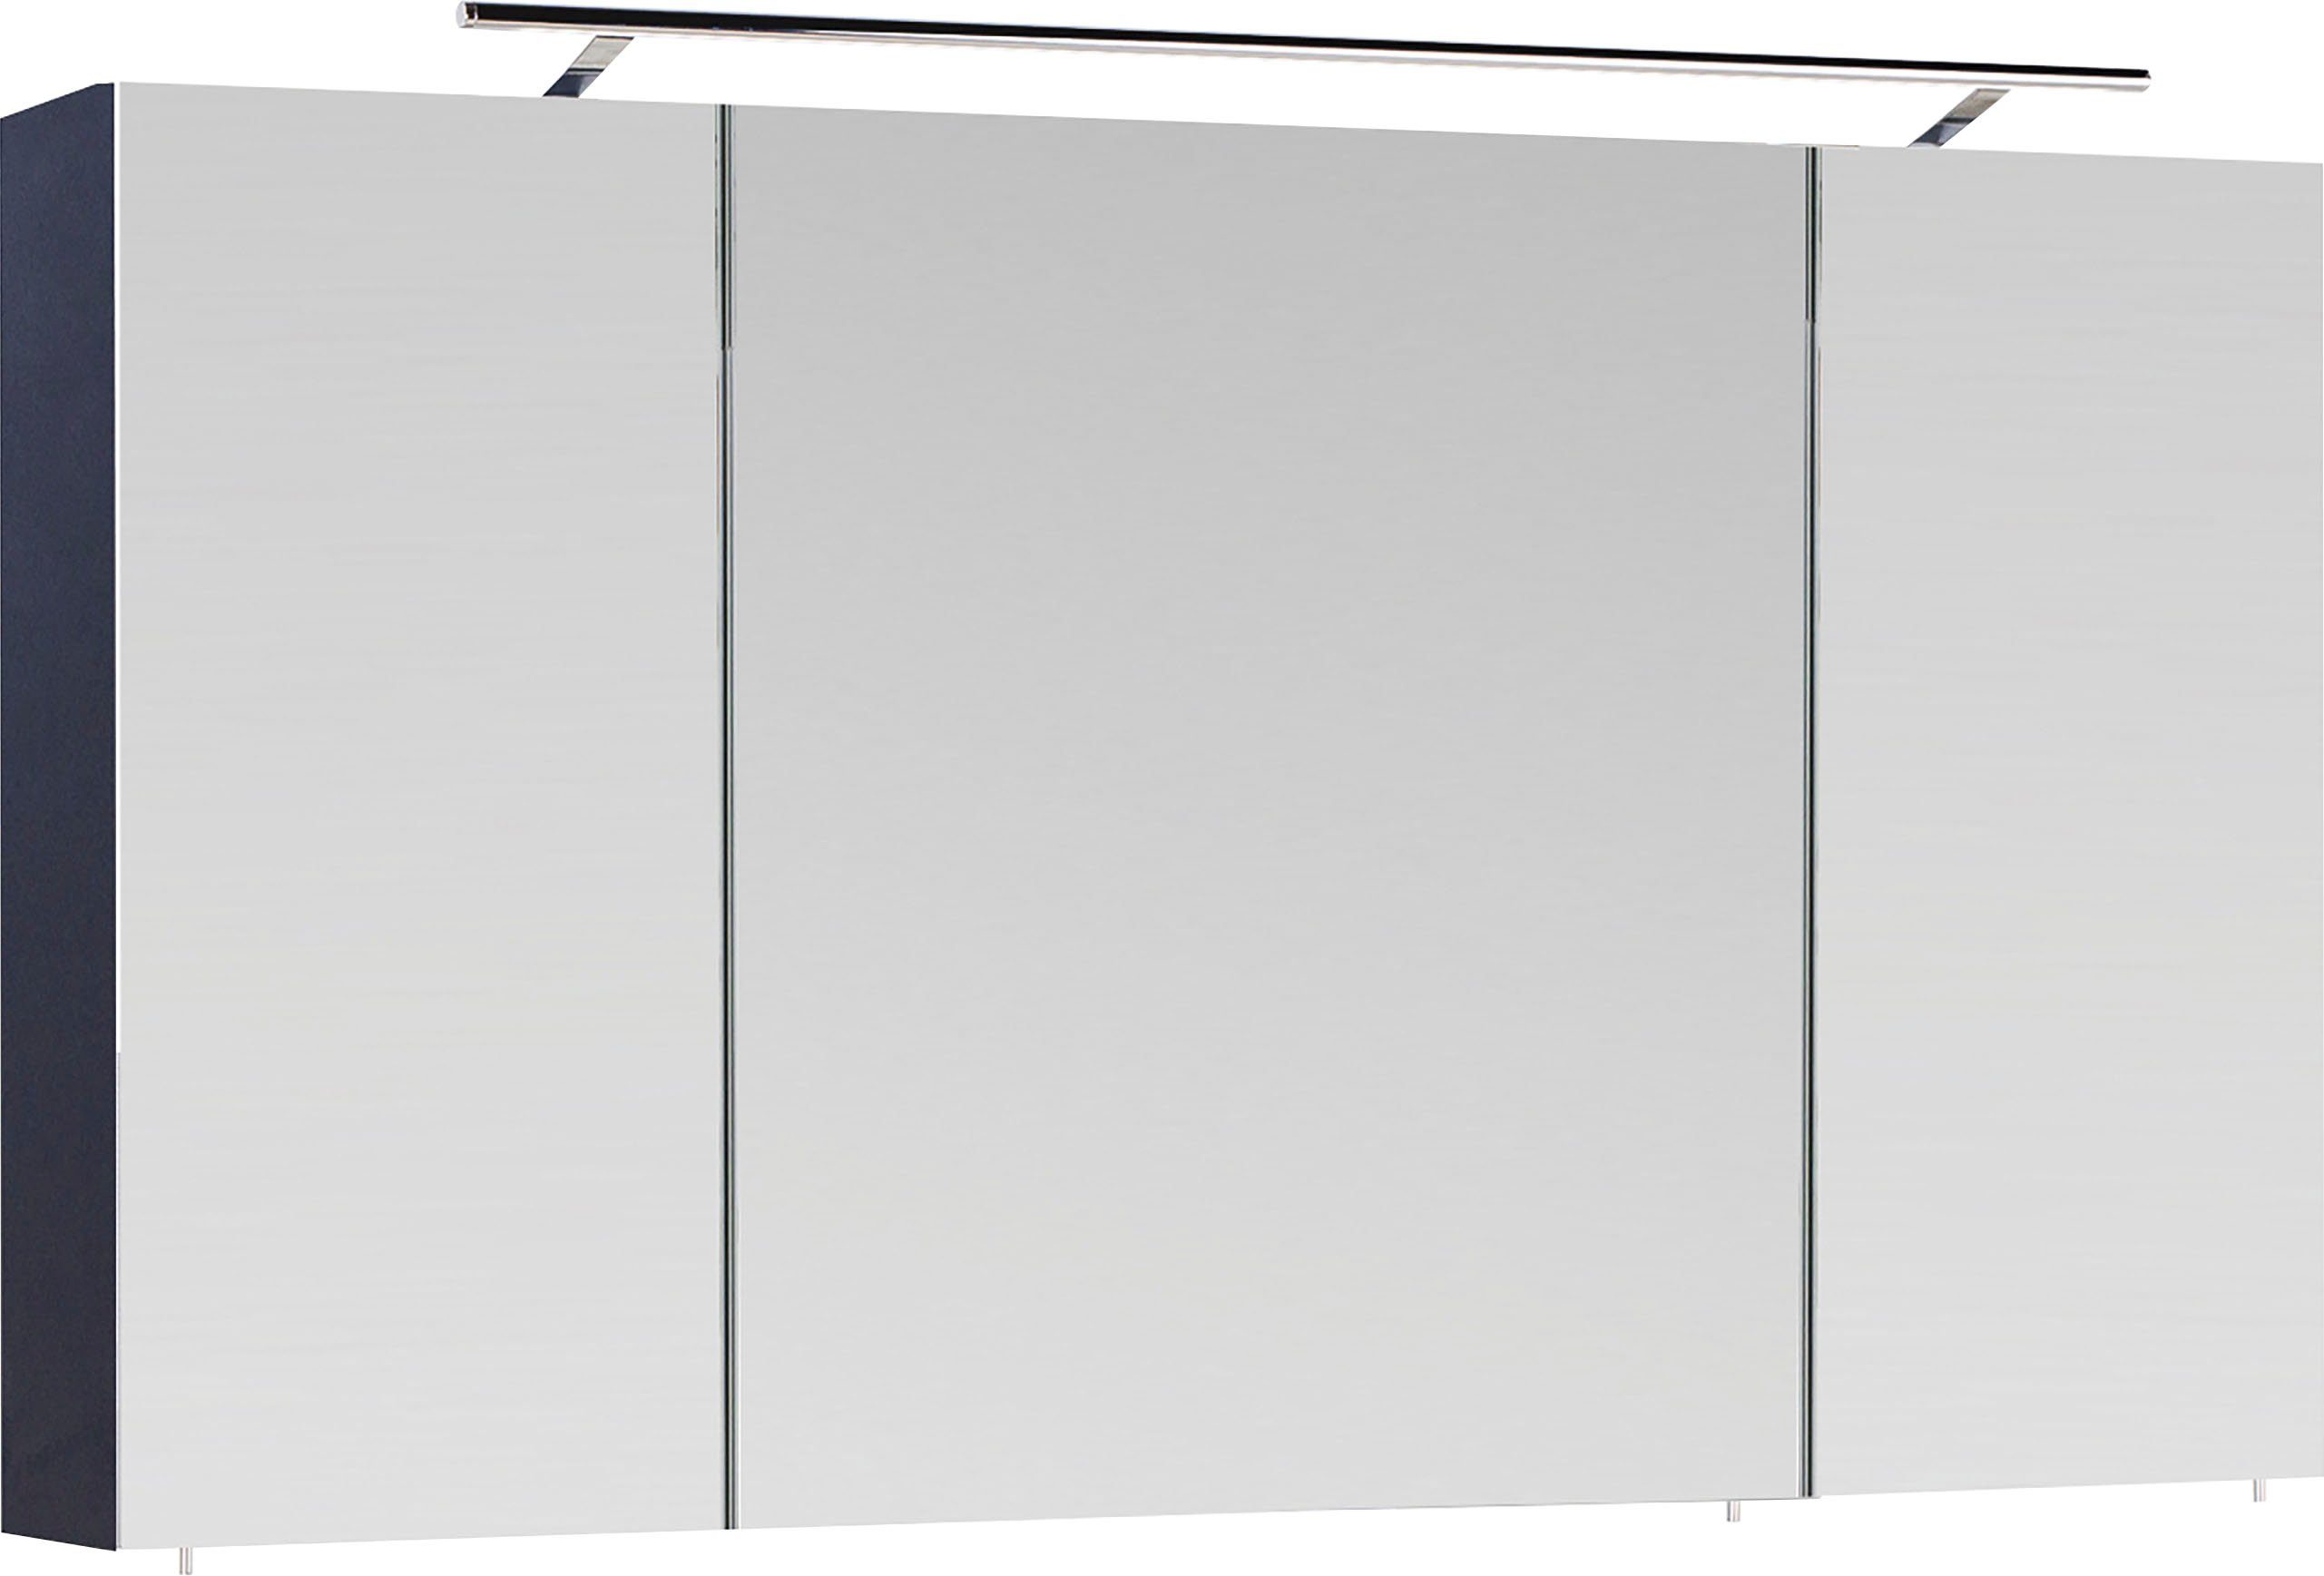 MARLIN Spiegelschrank 3040, Breite 120 cm | Badmöbel-Sets